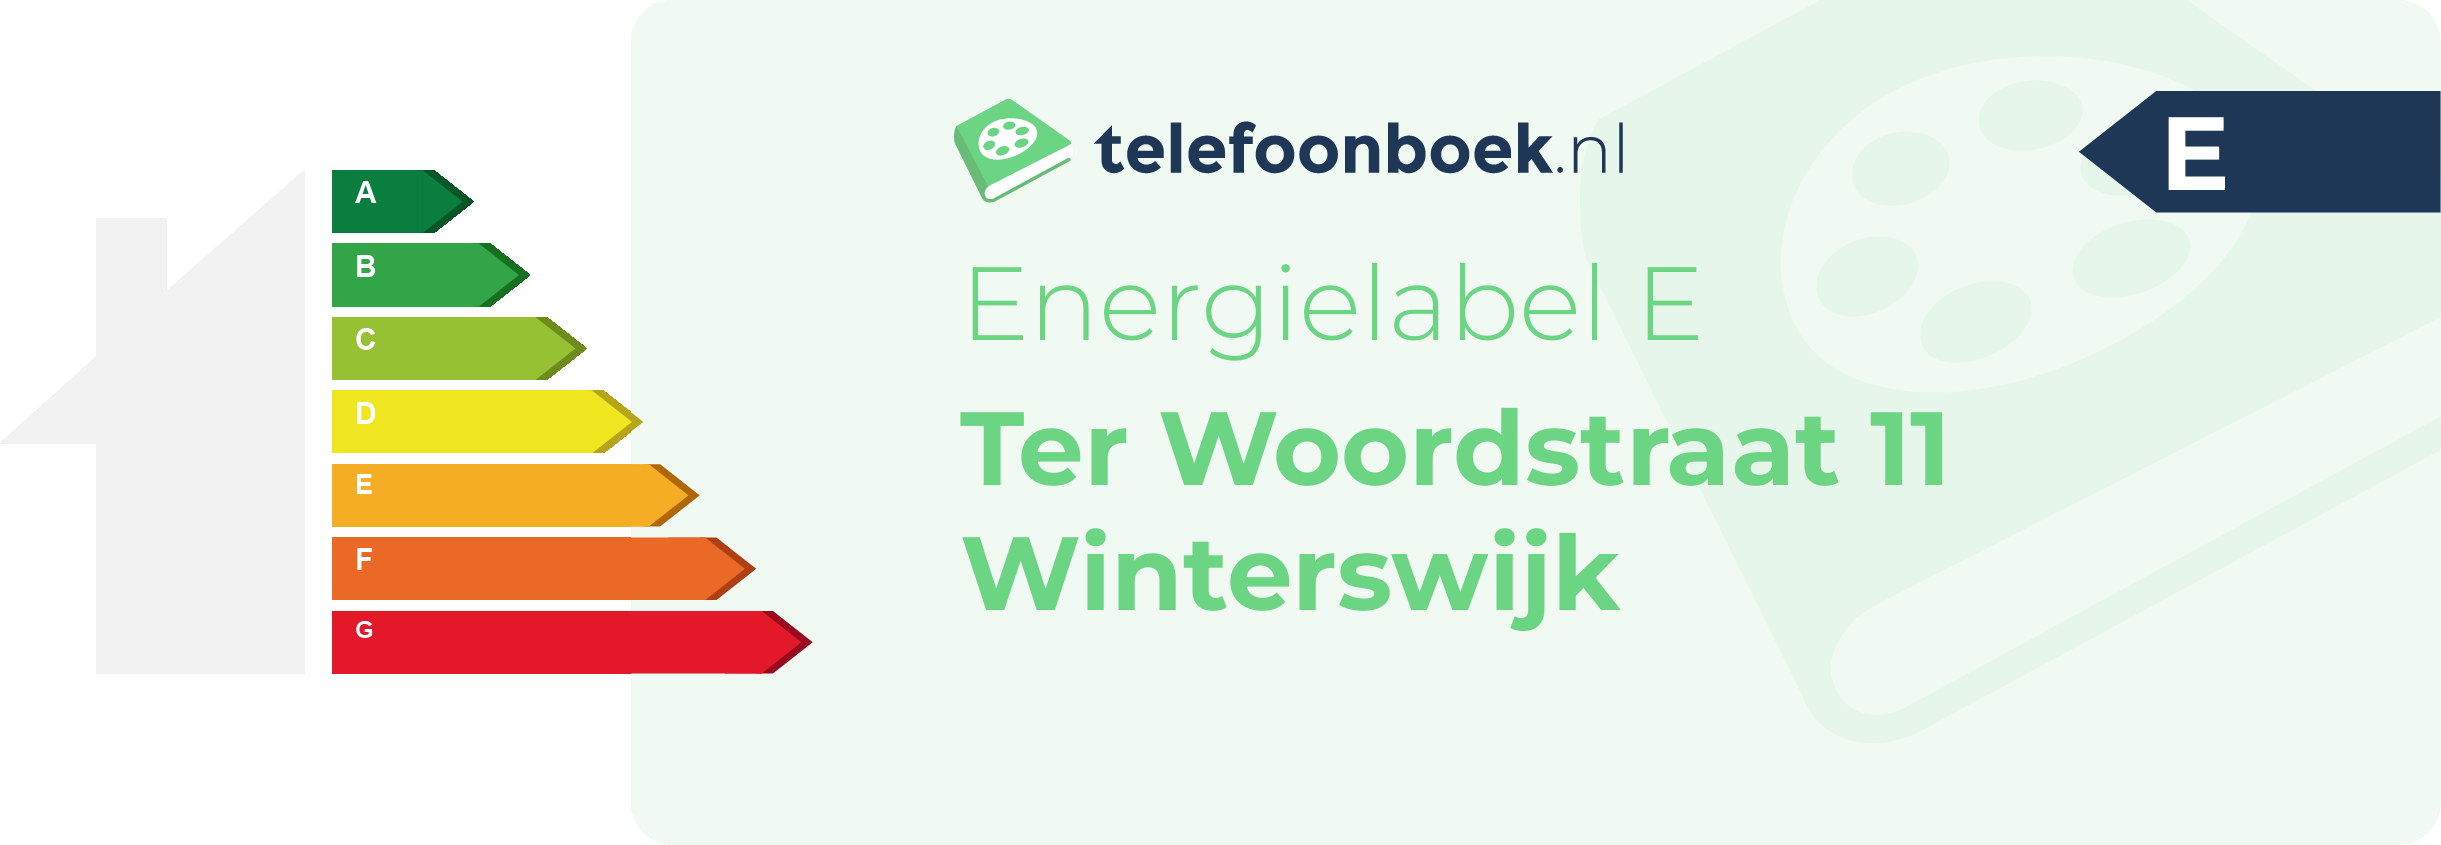 Energielabel Ter Woordstraat 11 Winterswijk